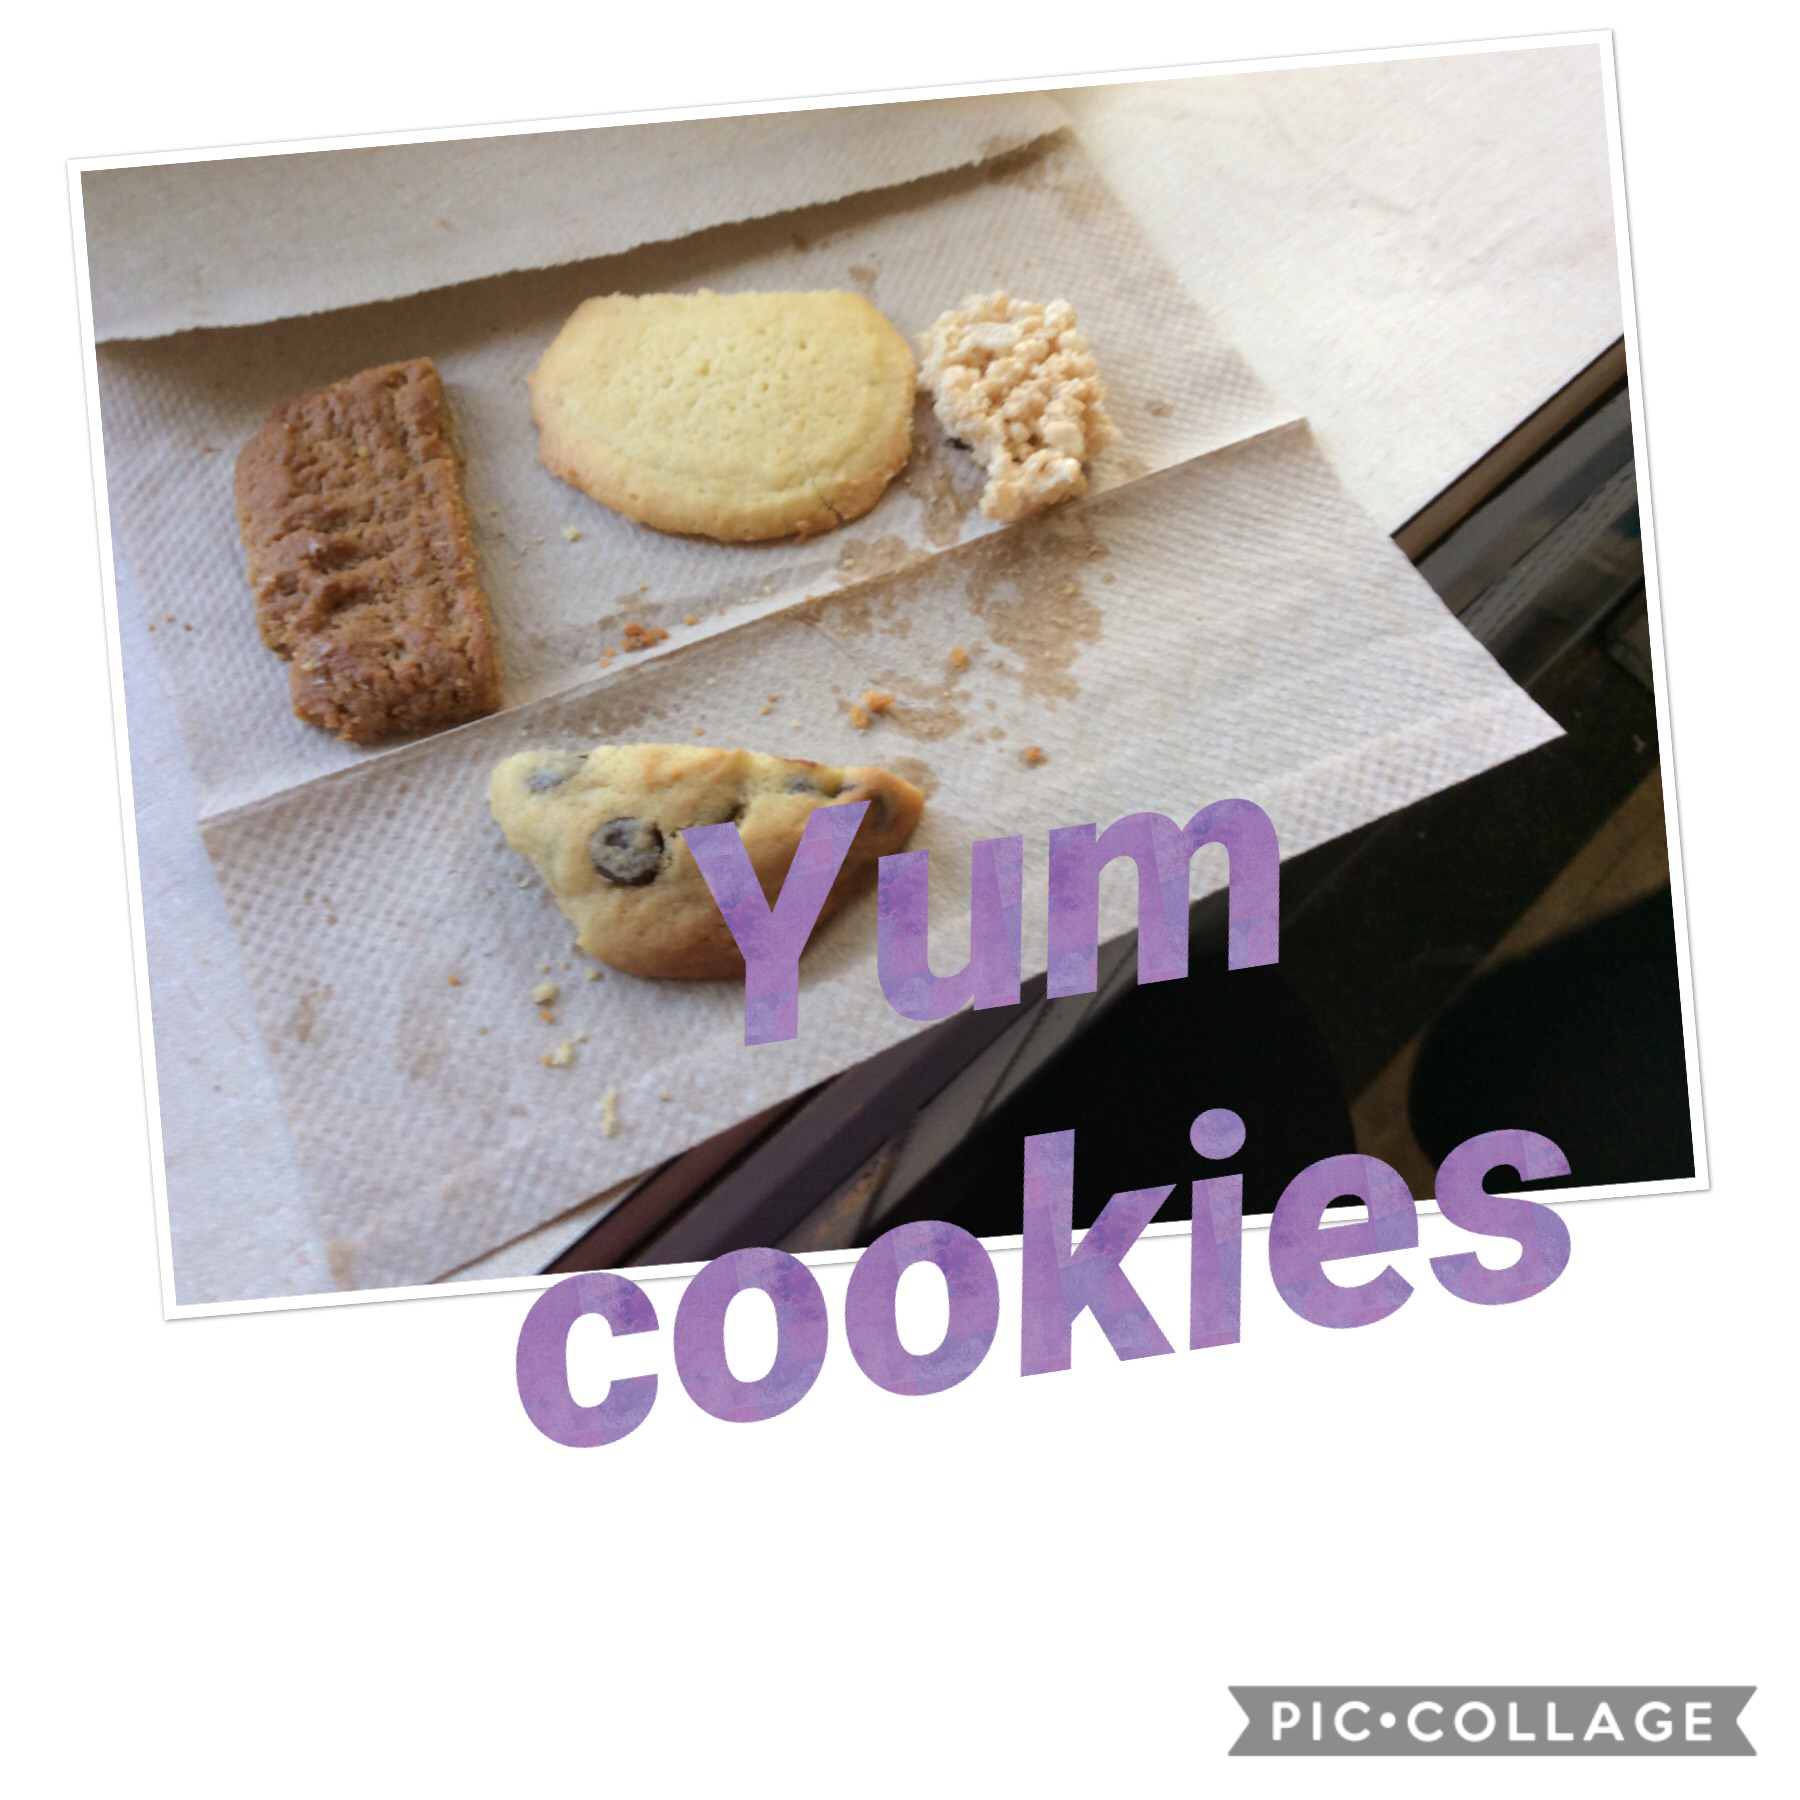 Yum cookies